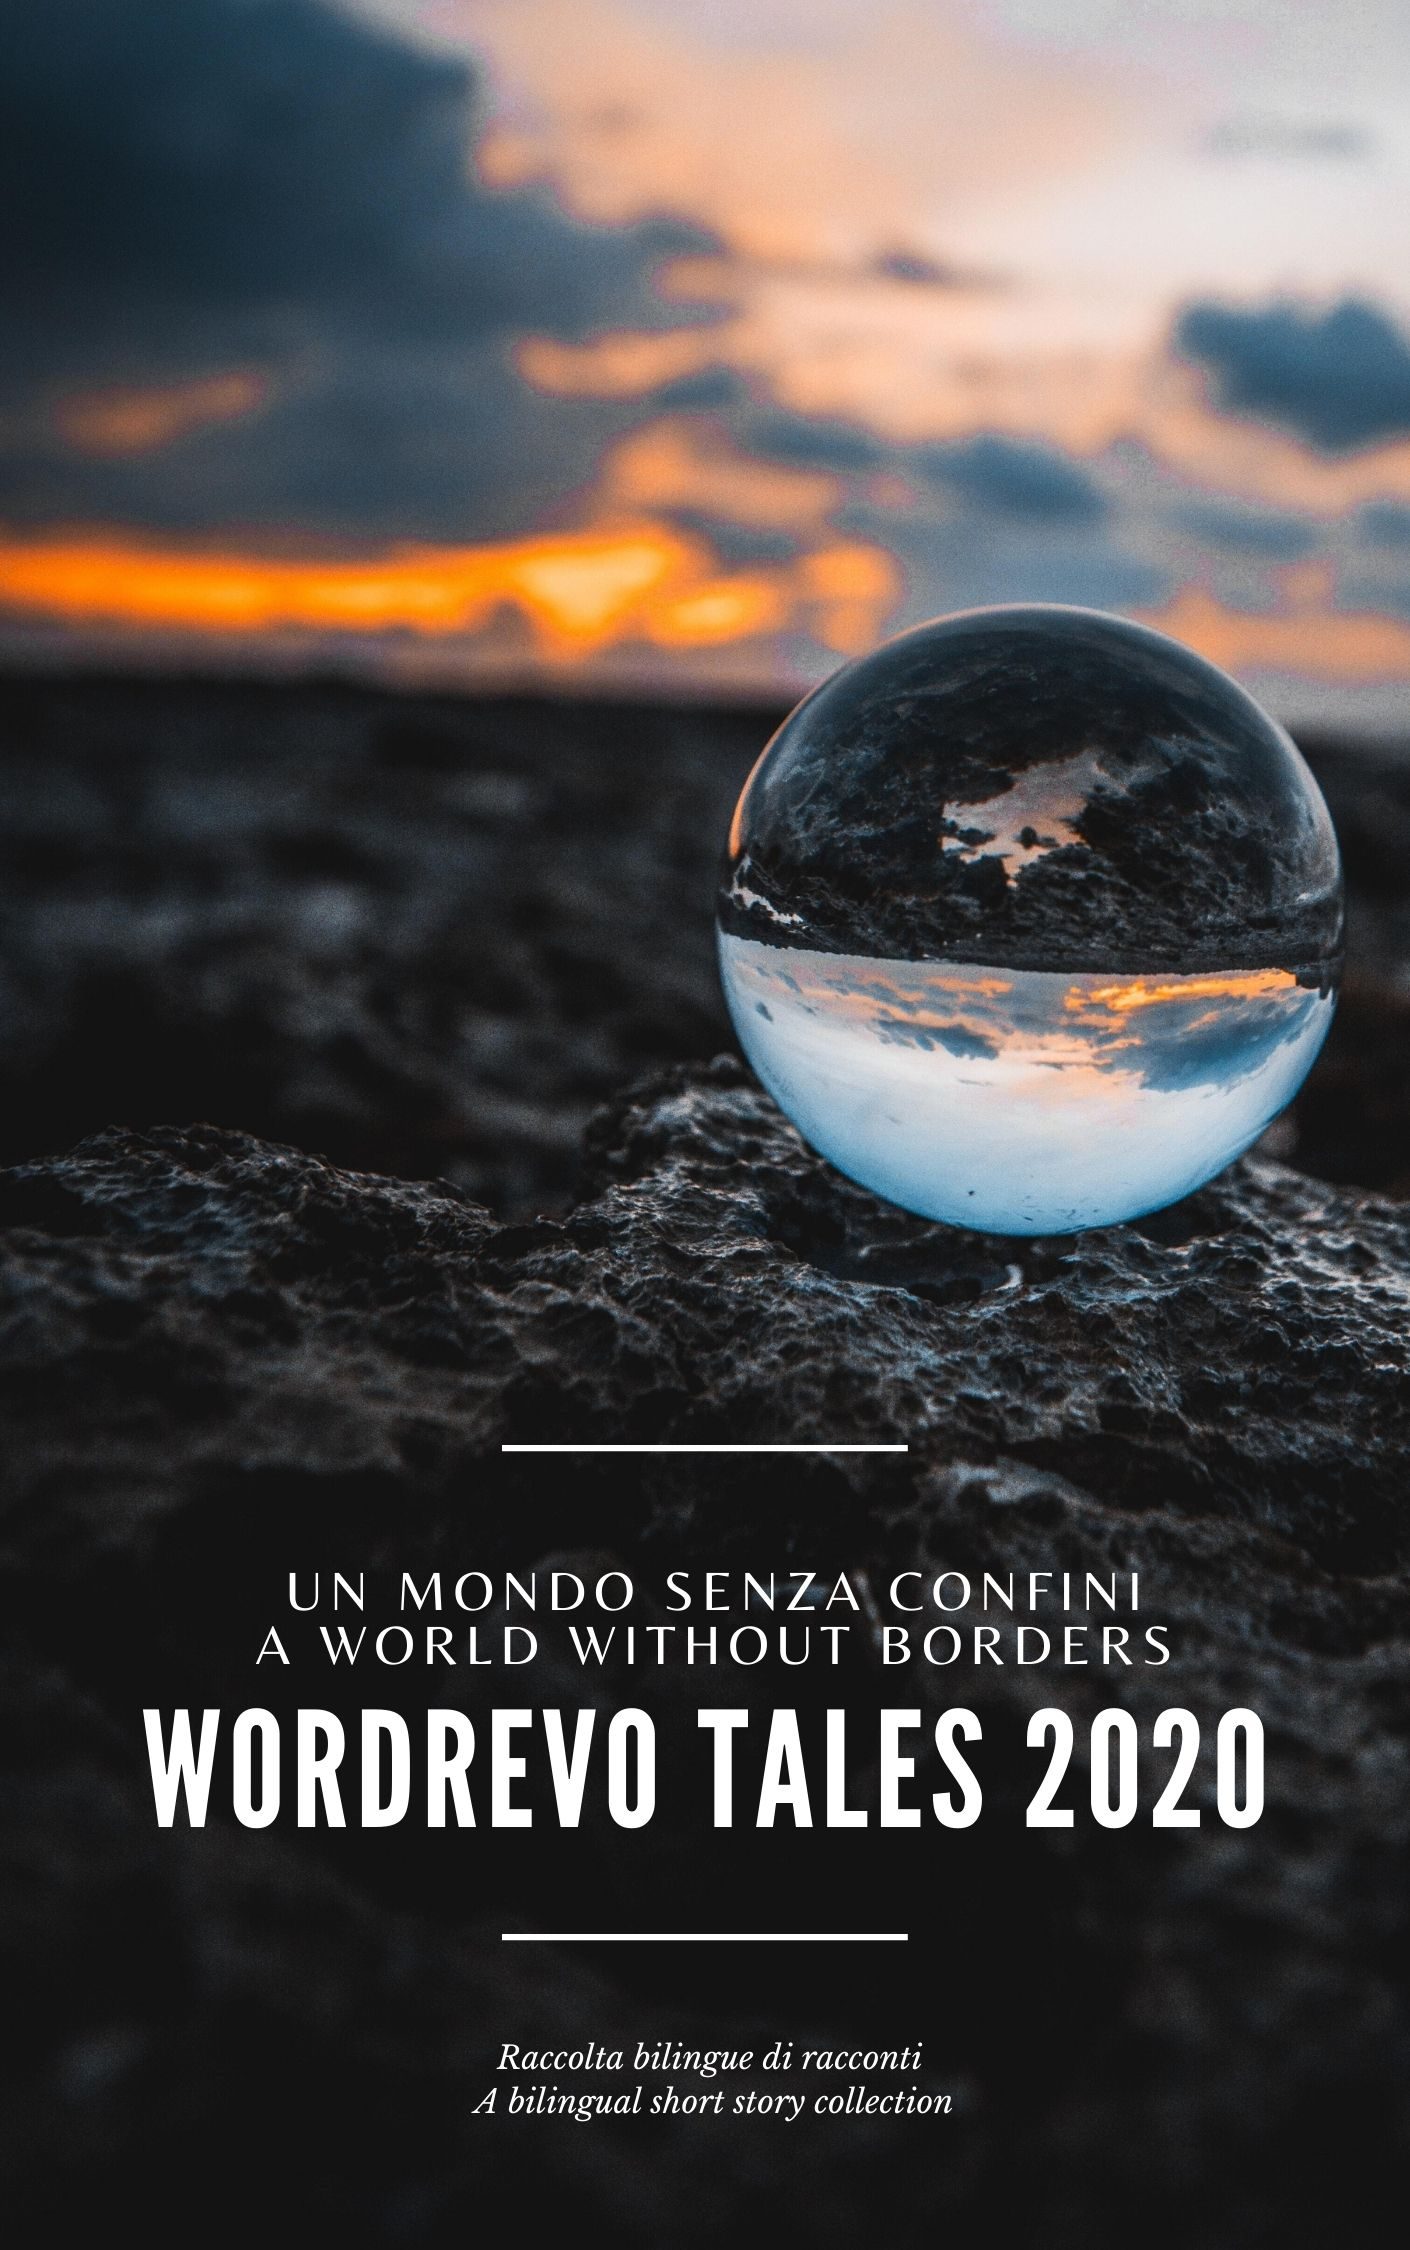 Pubblicazione dell'antologia "WordRevo Tales 2020"